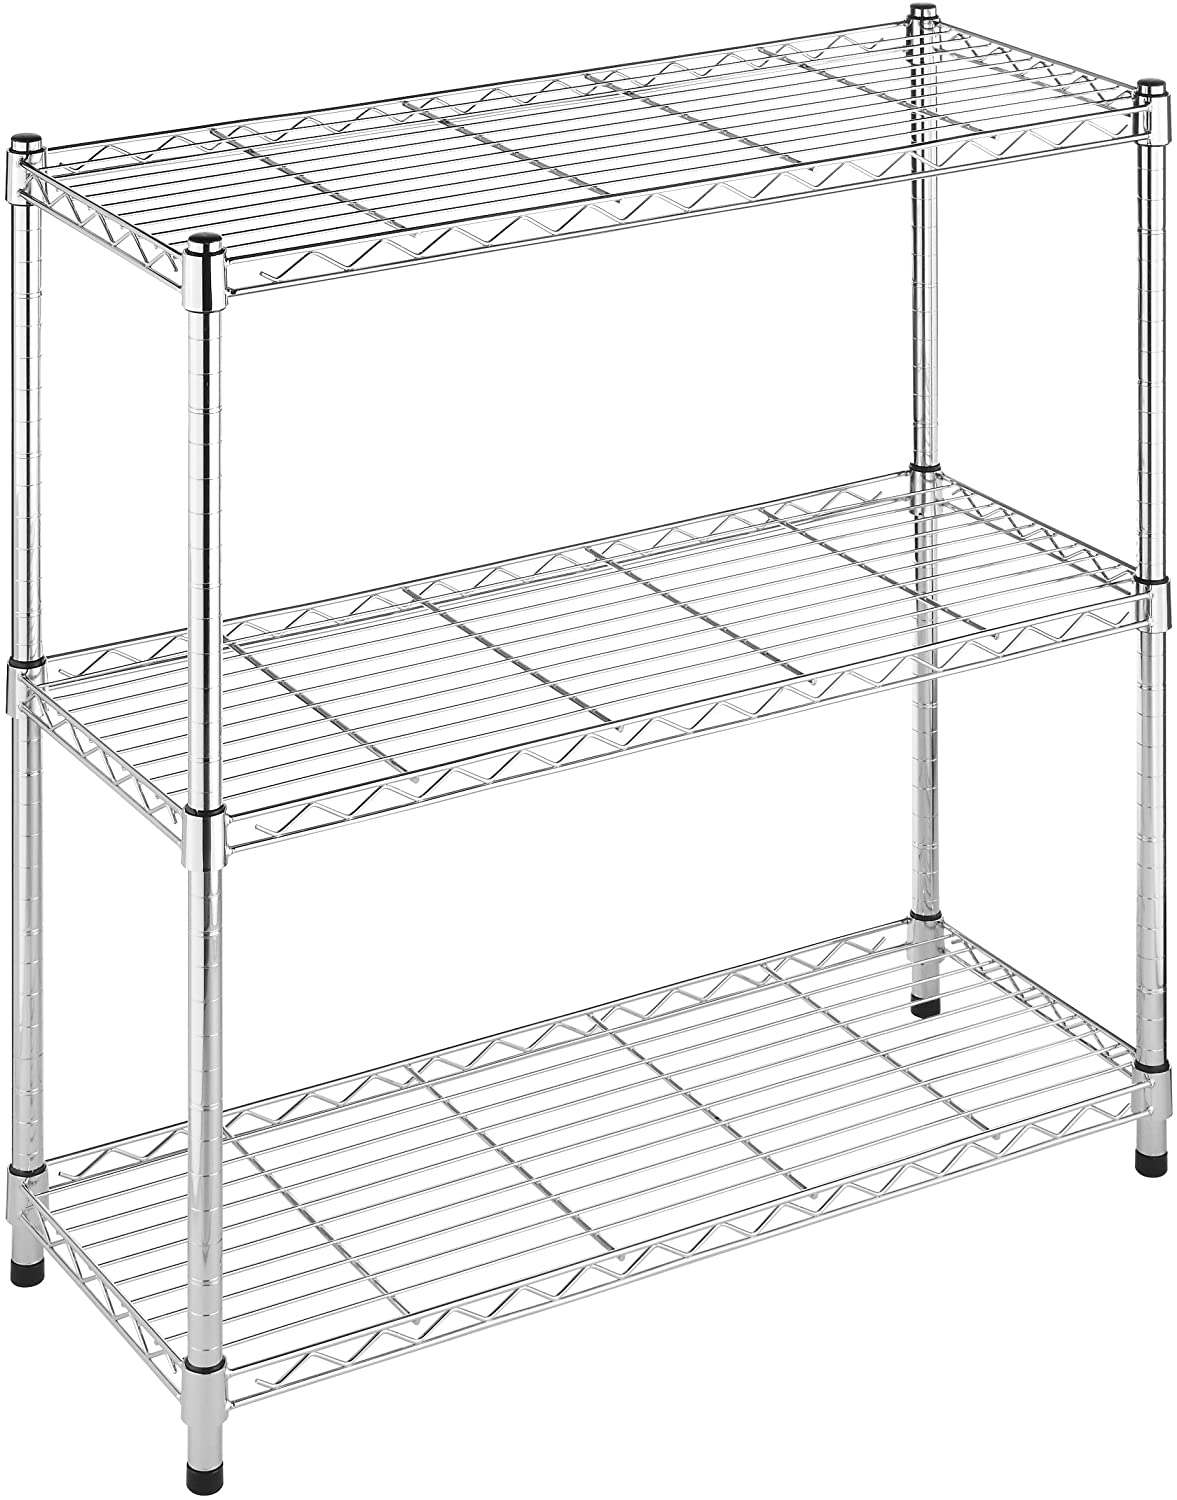 3 Tier Wire shelf rack